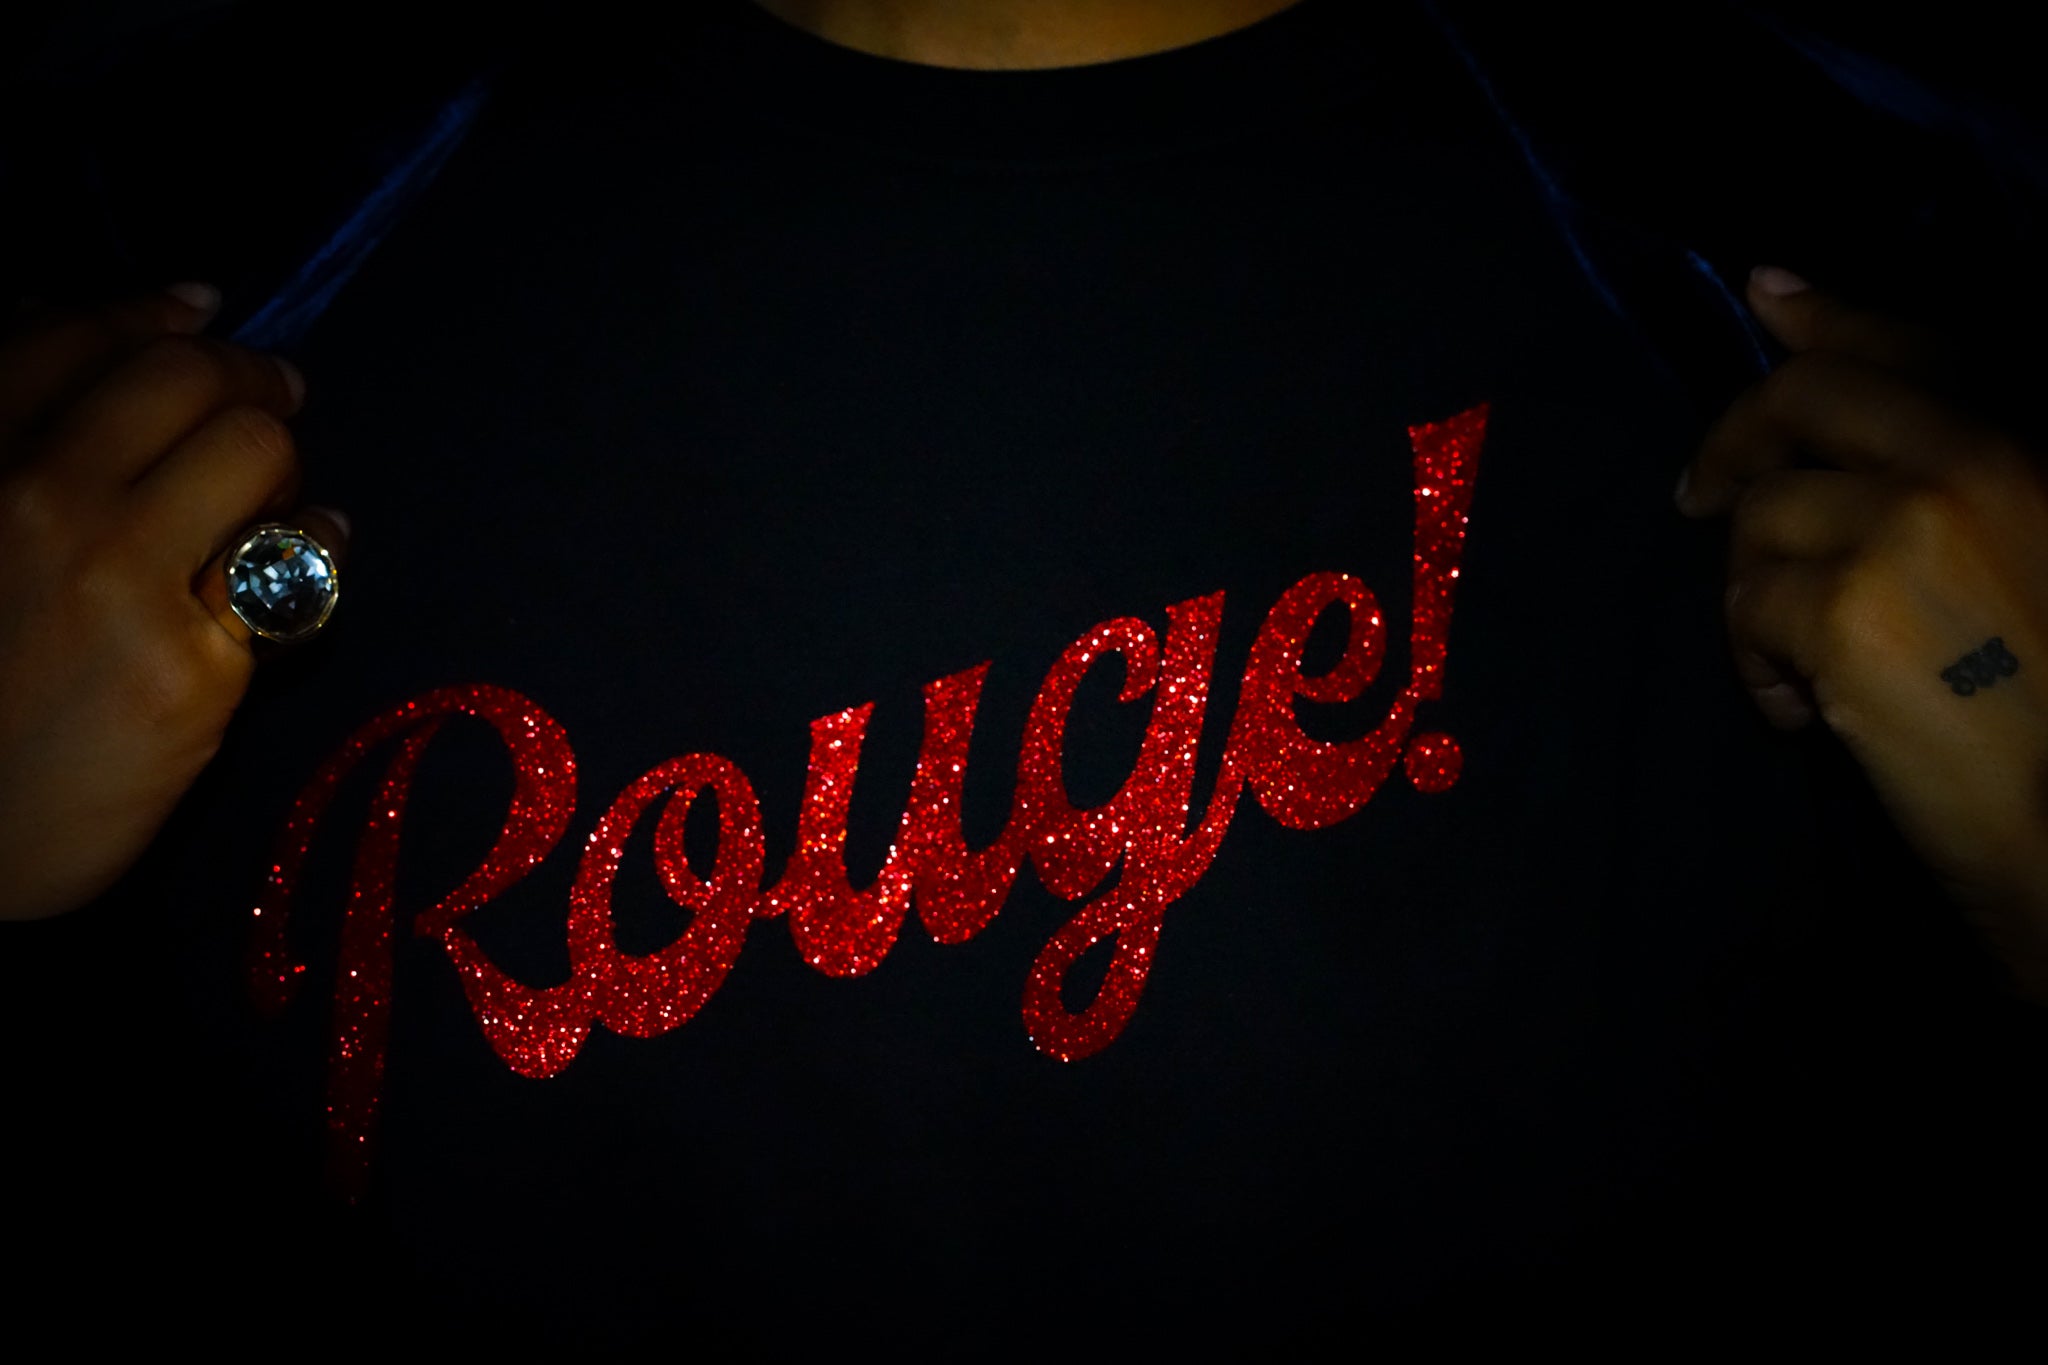 Rouge Sweatshirt - Schwarz/Glitzer Rot